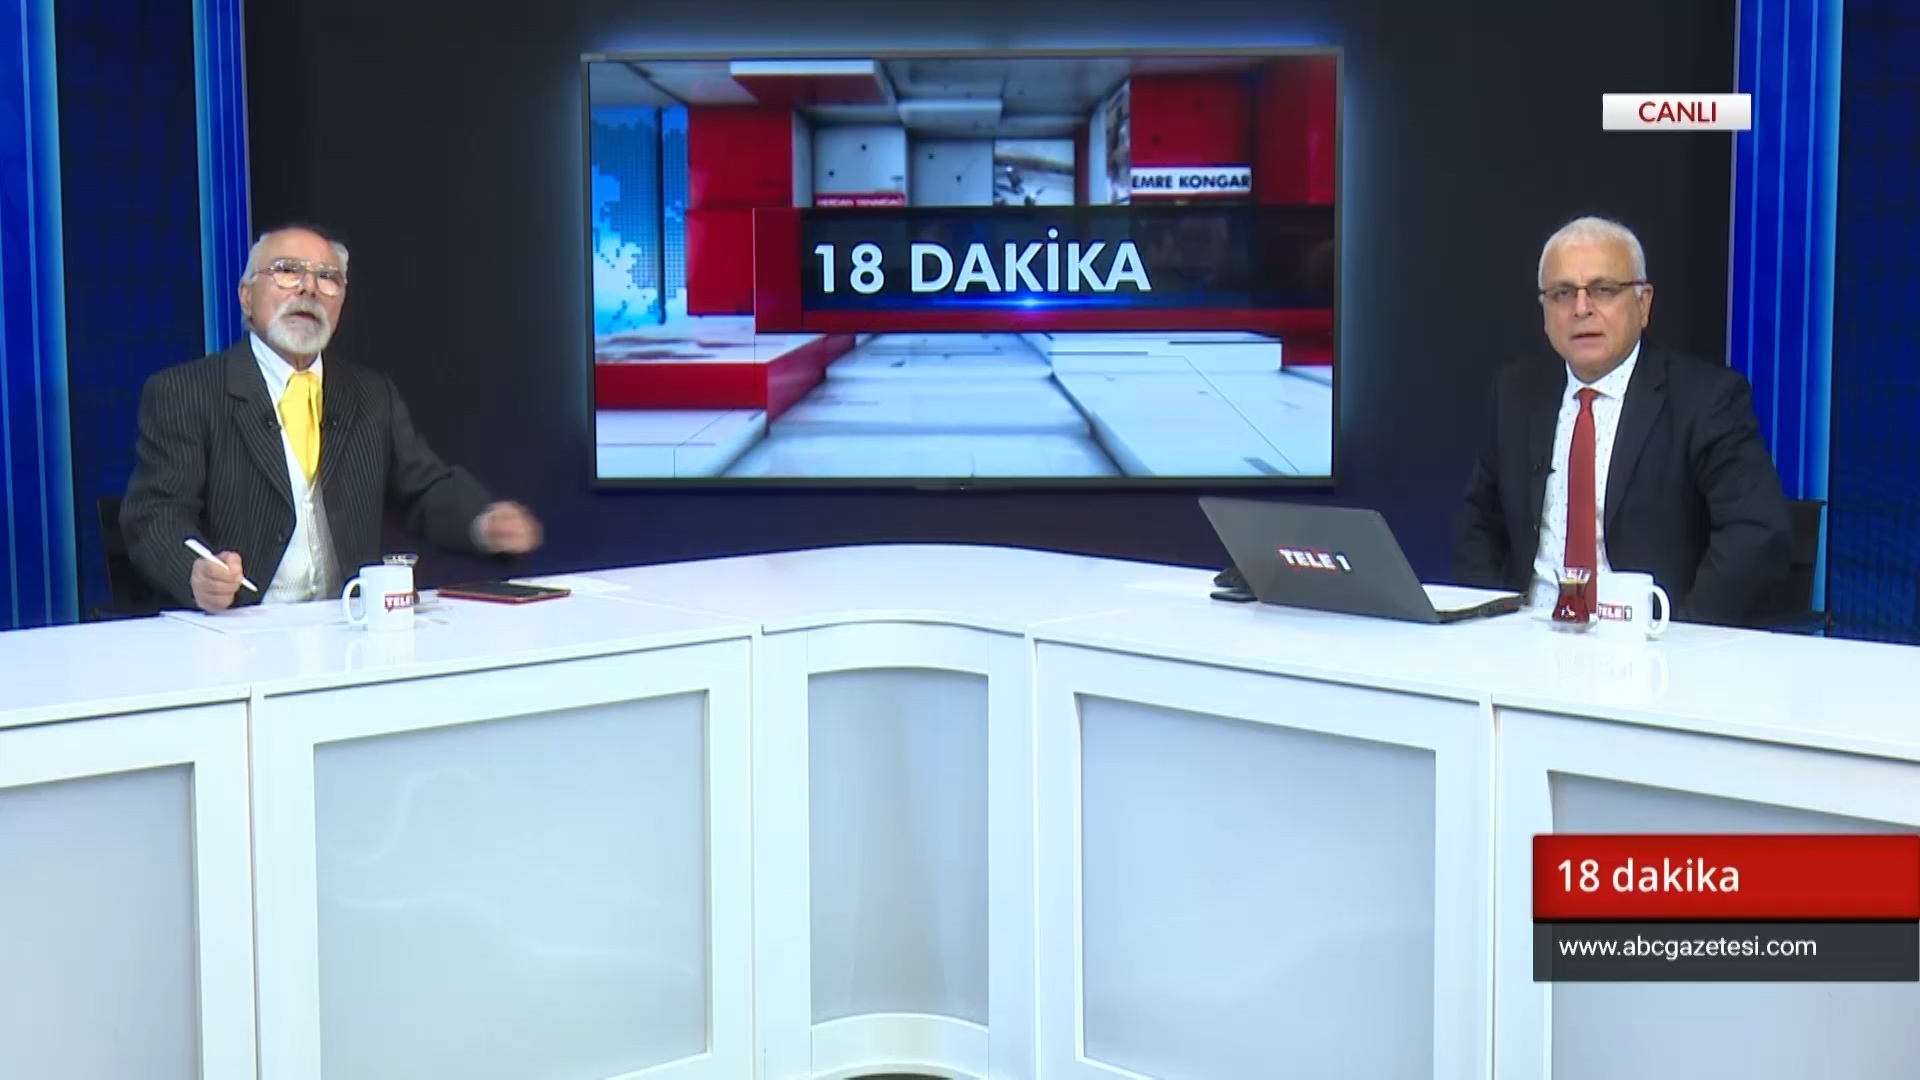 İmamoğlu, Erdoğan’ın 2 katı oy alarak belediye başkanı seçildi – 18 Dakika